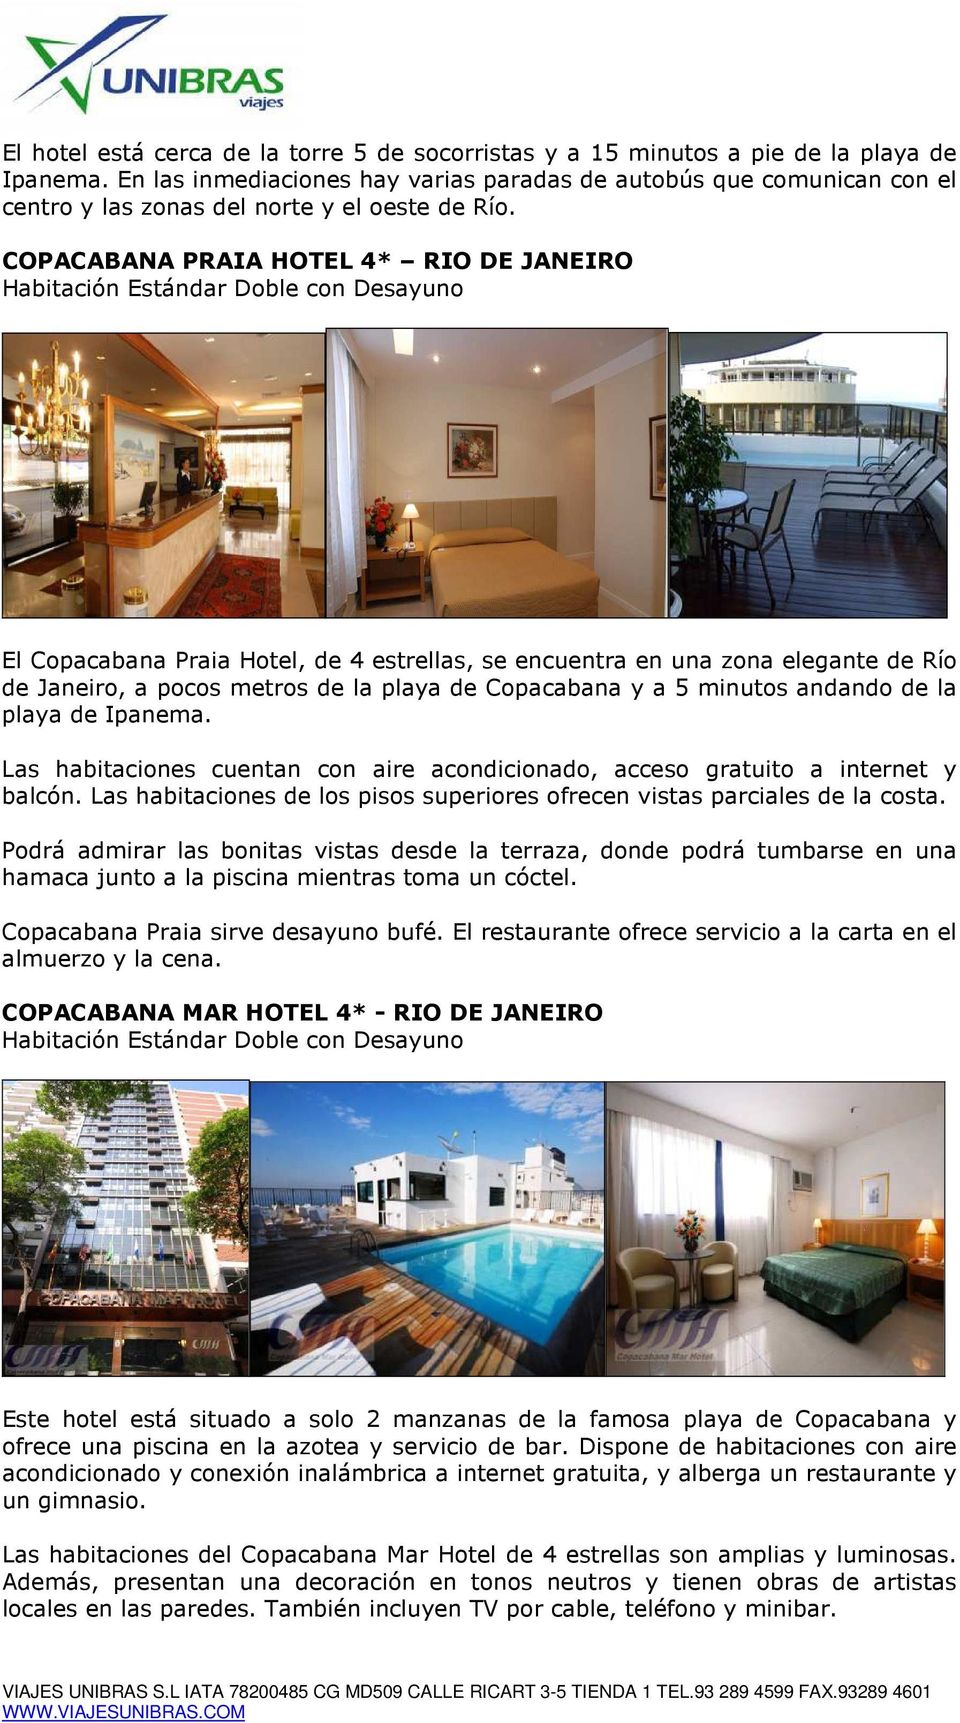 COPACABANA PRAIA HOTEL 4* RIO DE JANEIRO El Copacabana Praia Hotel, de 4 estrellas, se encuentra en una zona elegante de Río de Janeiro, a pocos metros de la playa de Copacabana y a 5 minutos andando